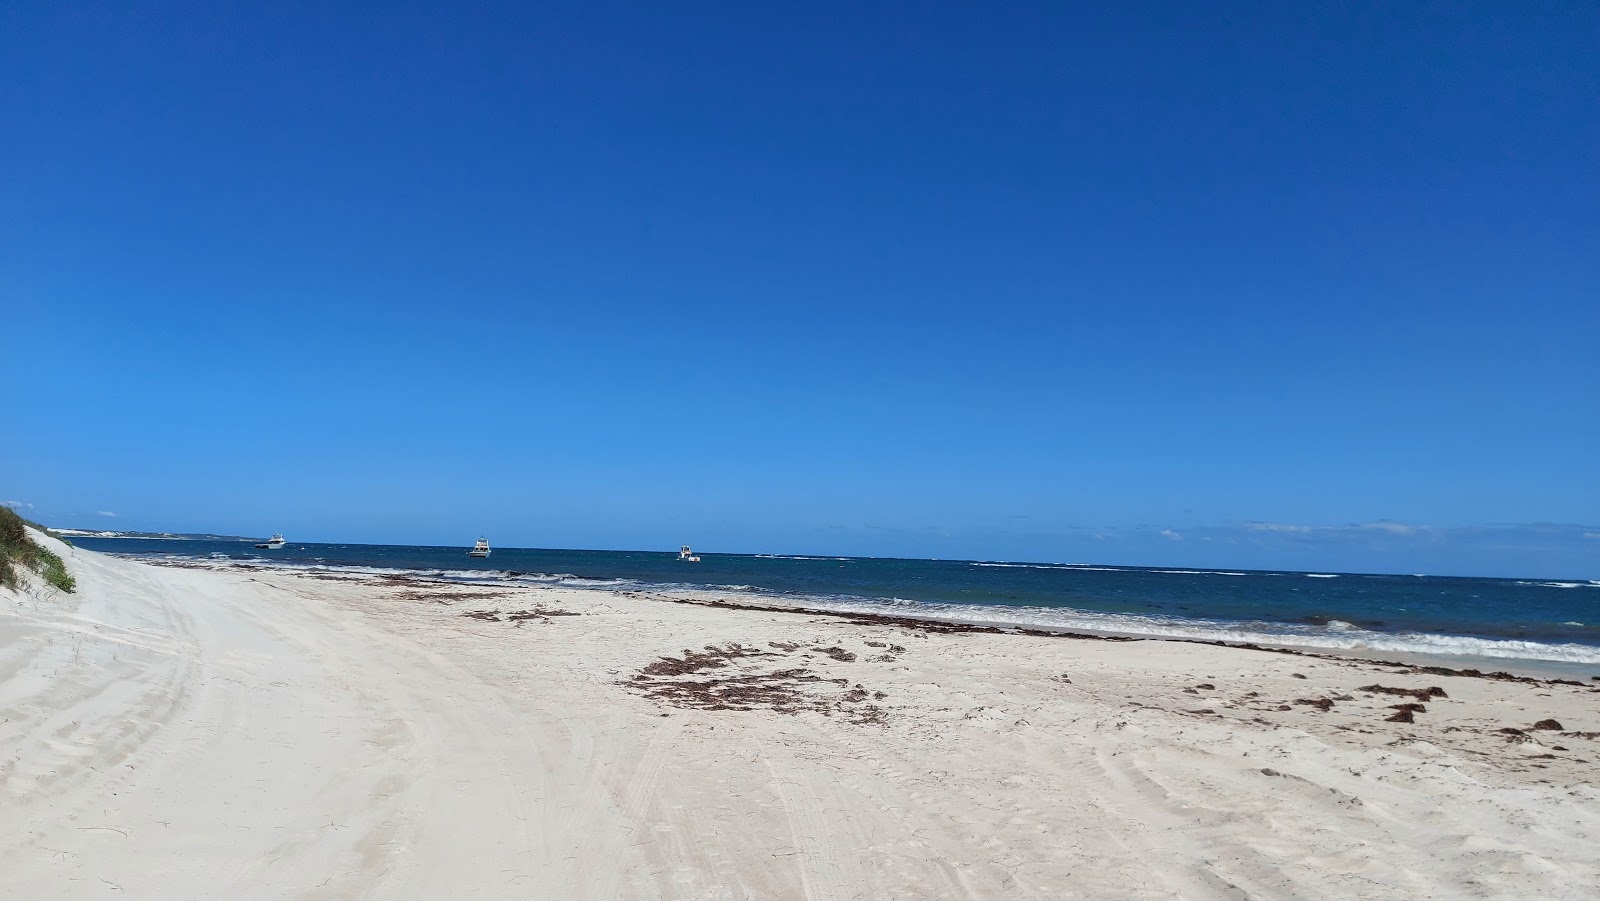 Zdjęcie Ledge Point Beach z powierzchnią biały drobny piasek